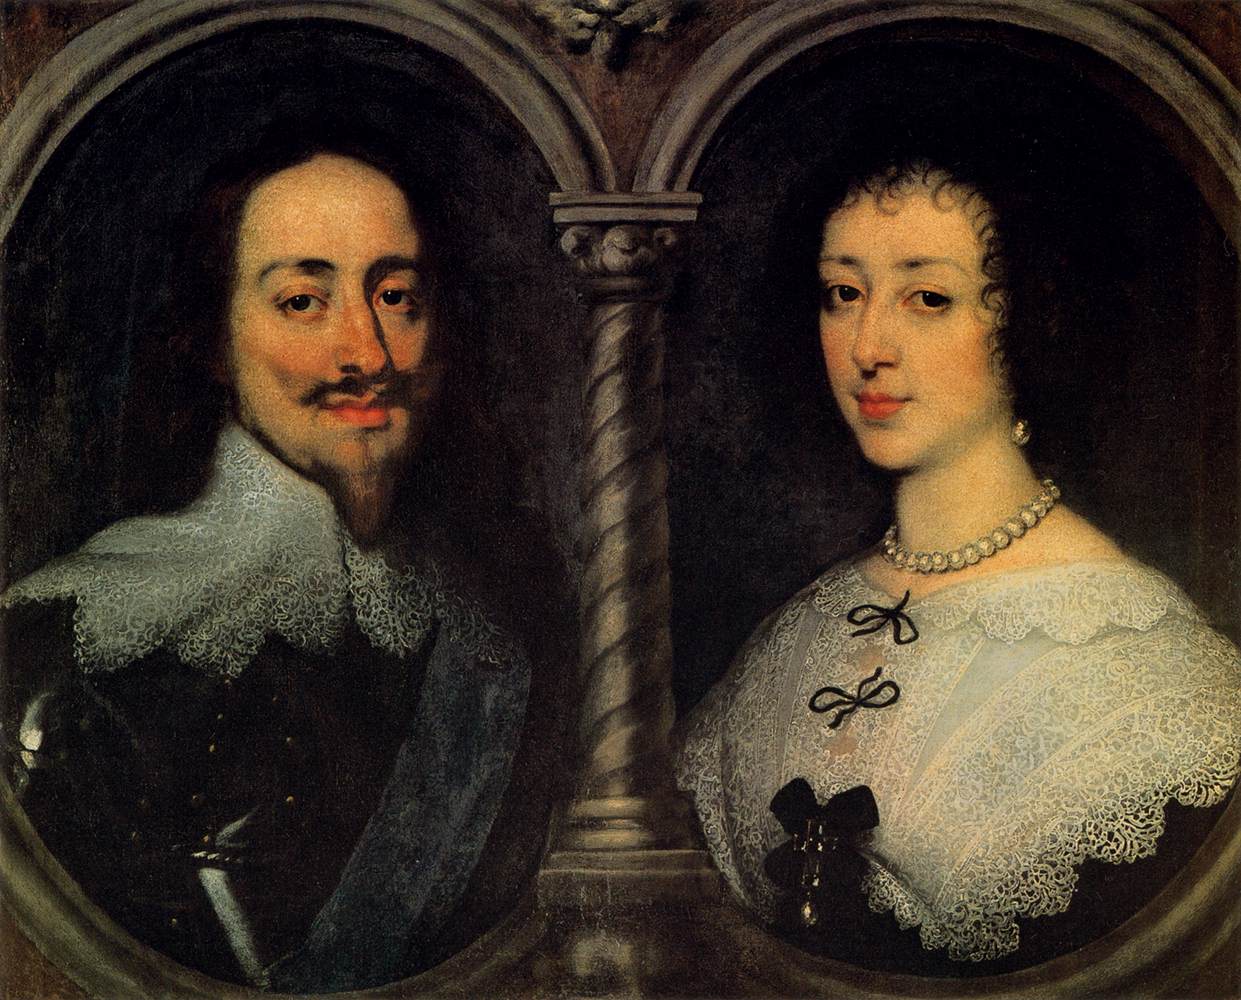 Carlos I af England og Henrietta fra Frankrig